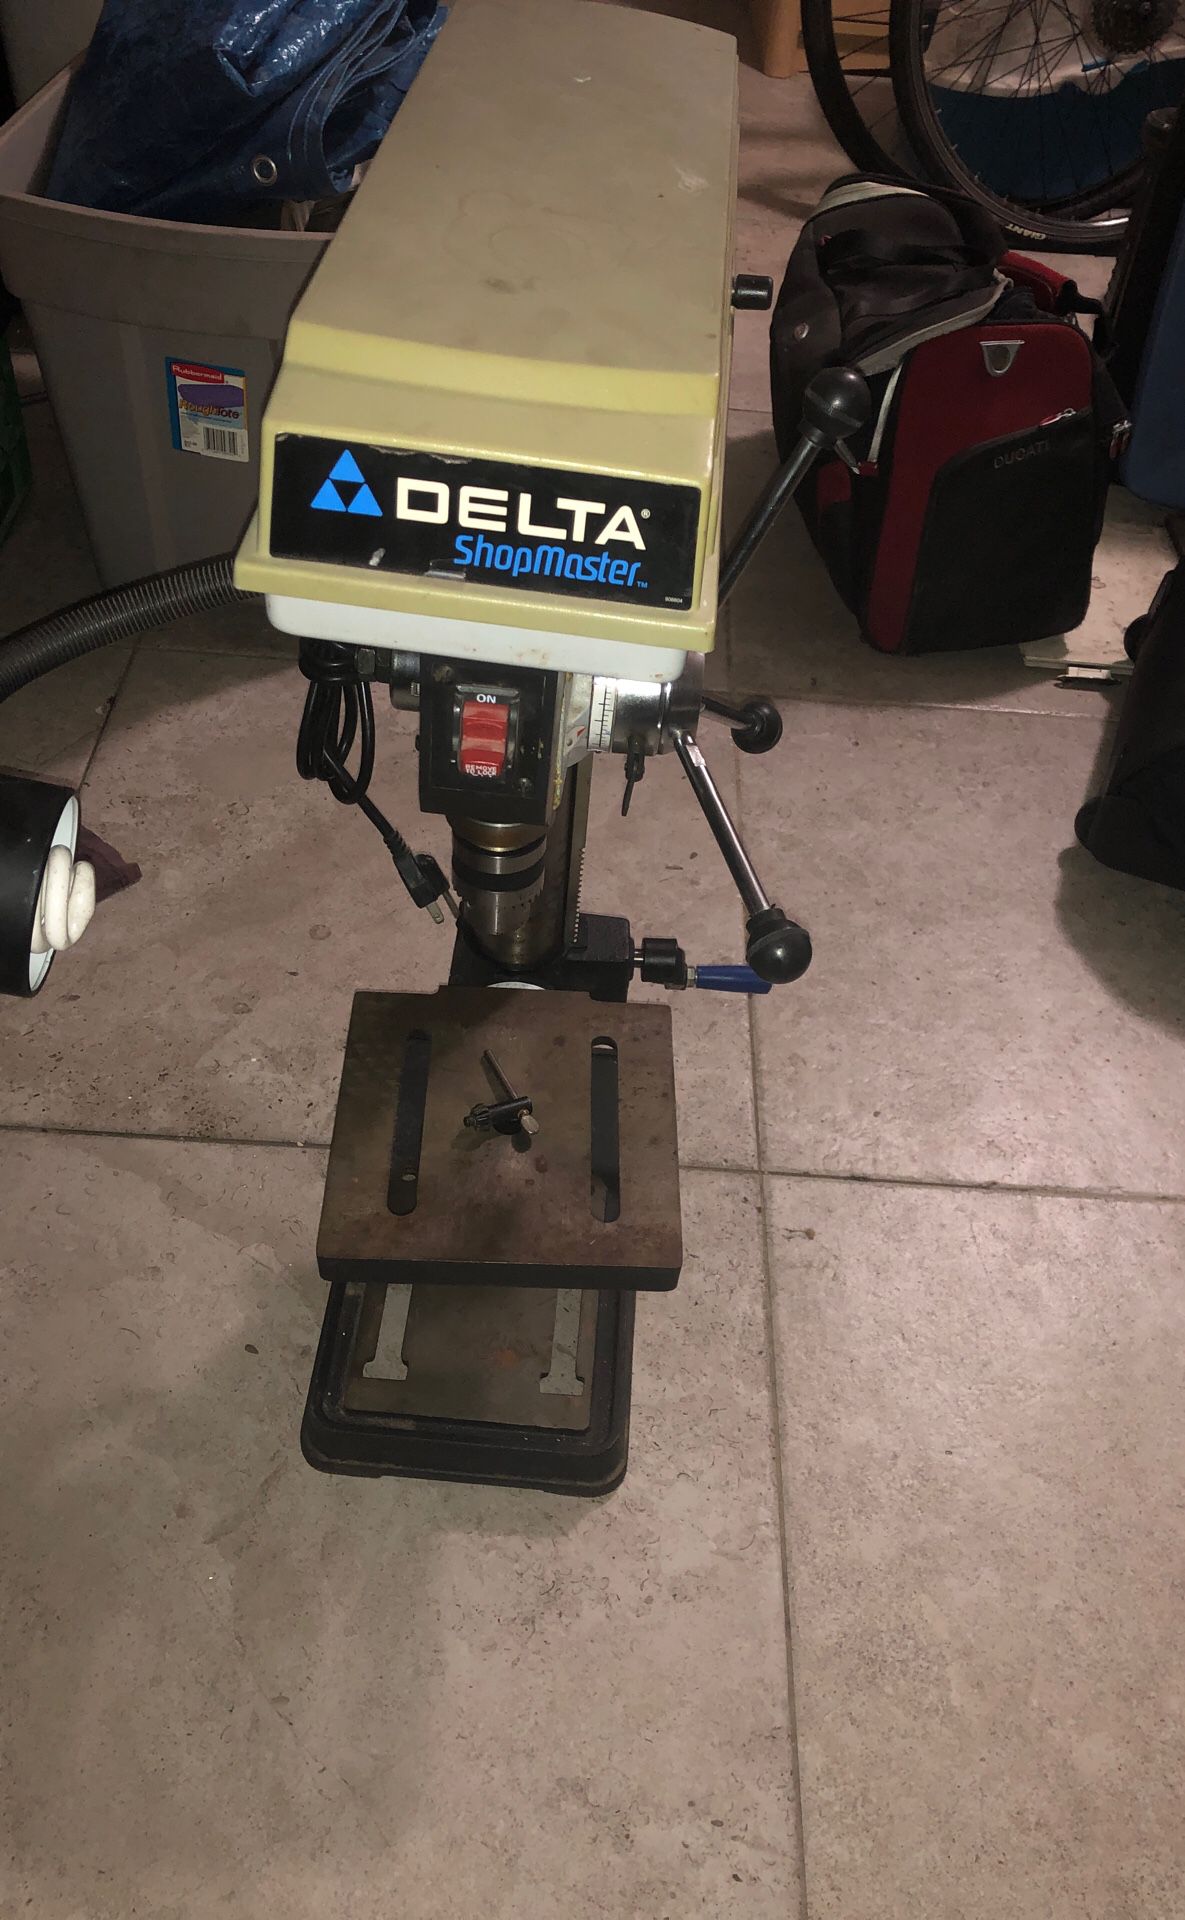 Delta shopmaster 10” drill press. Model DP200